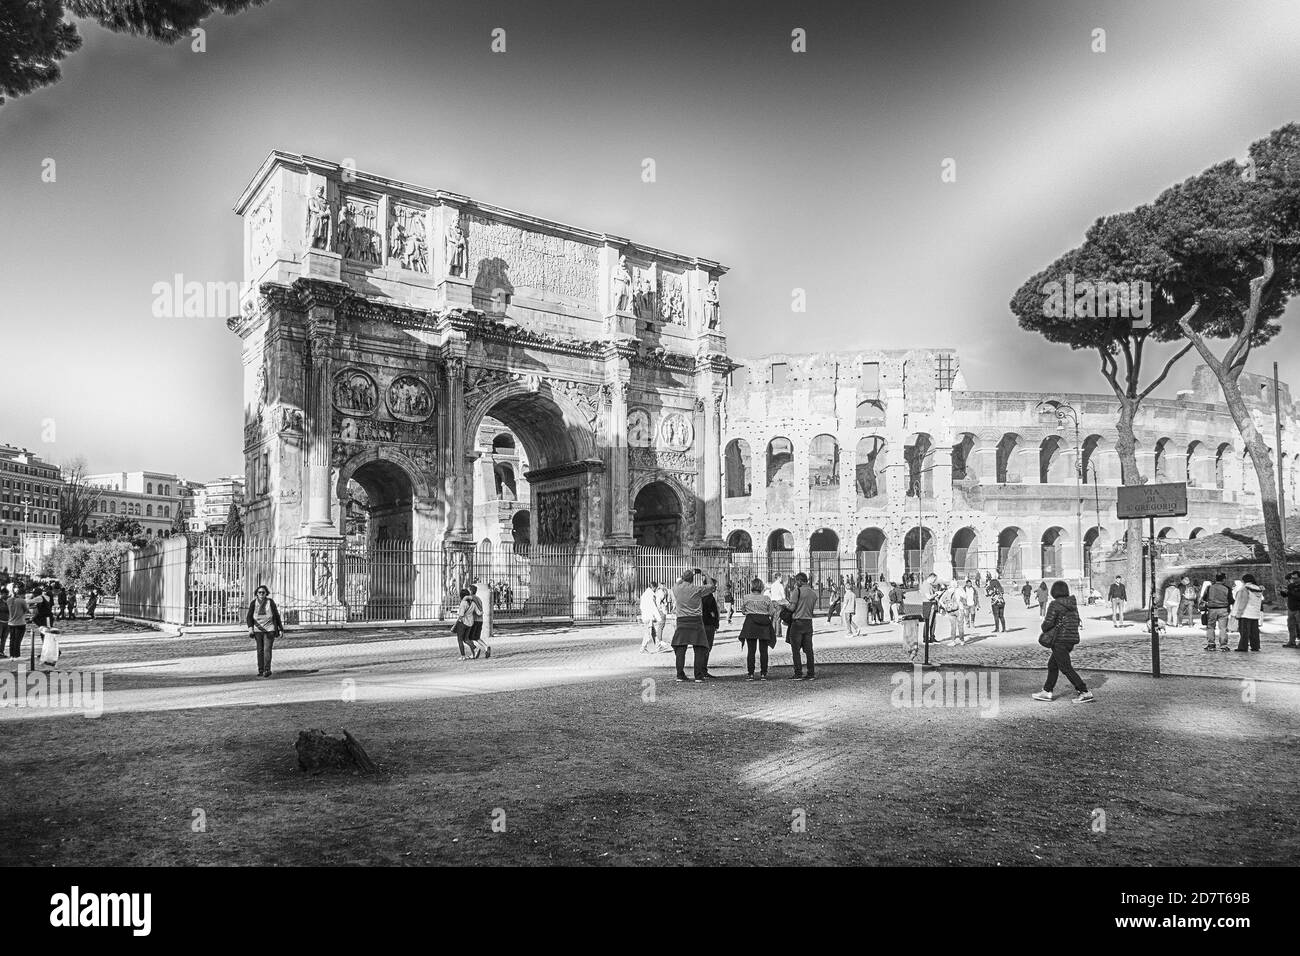 ROME - 31 MARS : l'arche de Constantine et le Colisée au Forum romain de Rome, Italie, 31 mars 2019 Banque D'Images